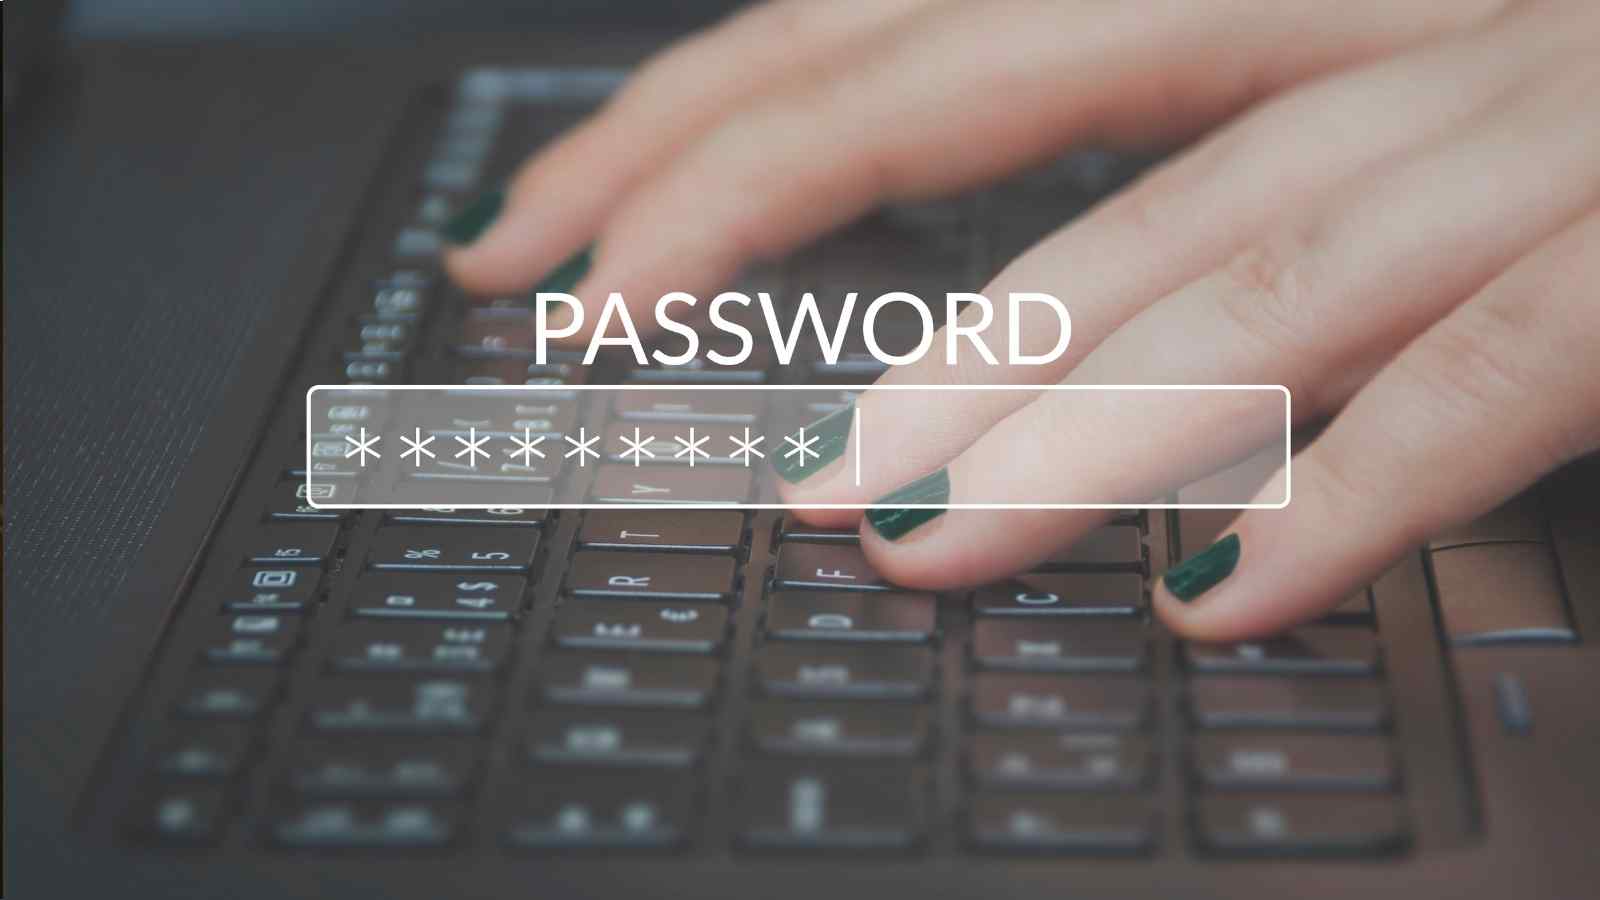 Una password sicura è il metodo migliore per proteggersi, come sa bene il Regno Unito che ha creato una legge ad hoc